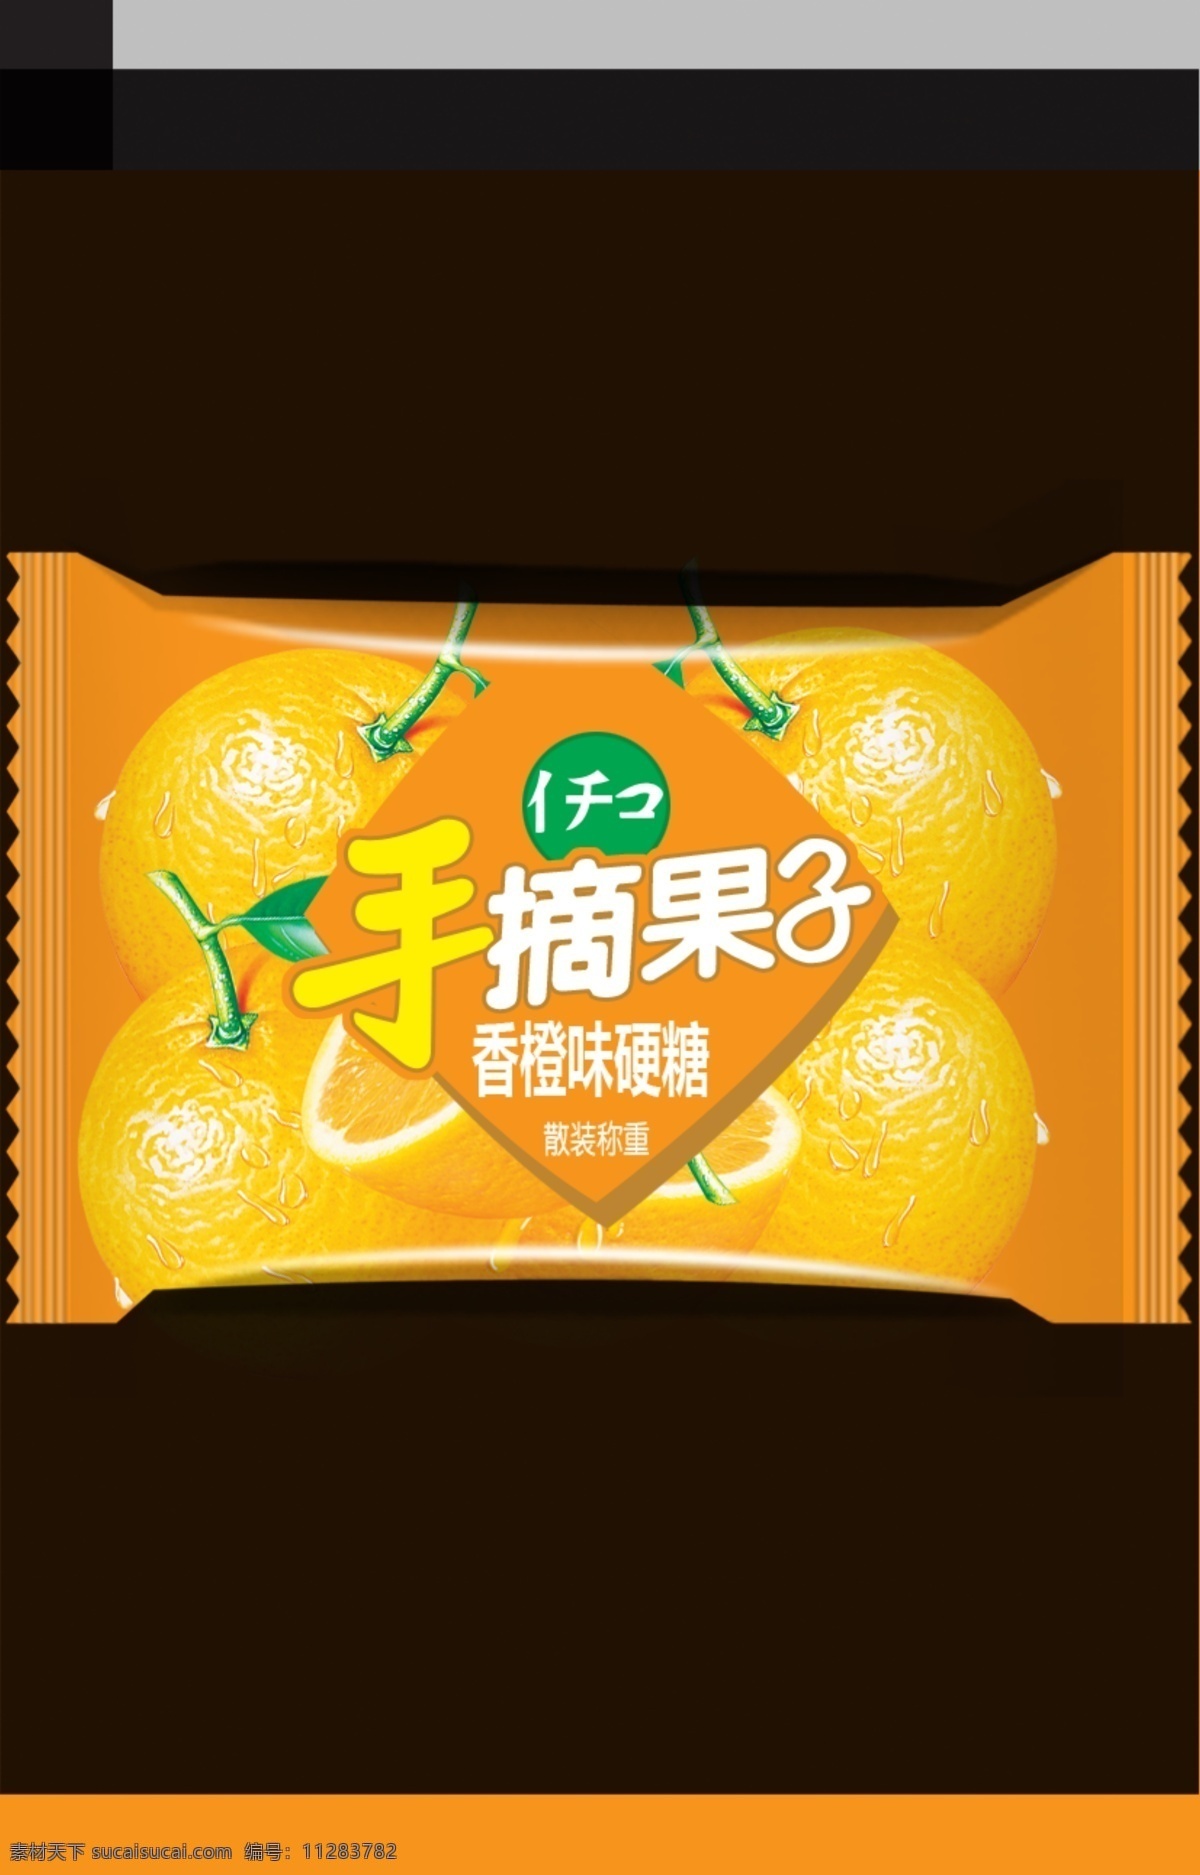 香橙 硬糖 包装设计 广告设计模板 糖果 源文件 模板下载 香橙硬糖 水果硬糖 矢量图 其他矢量图